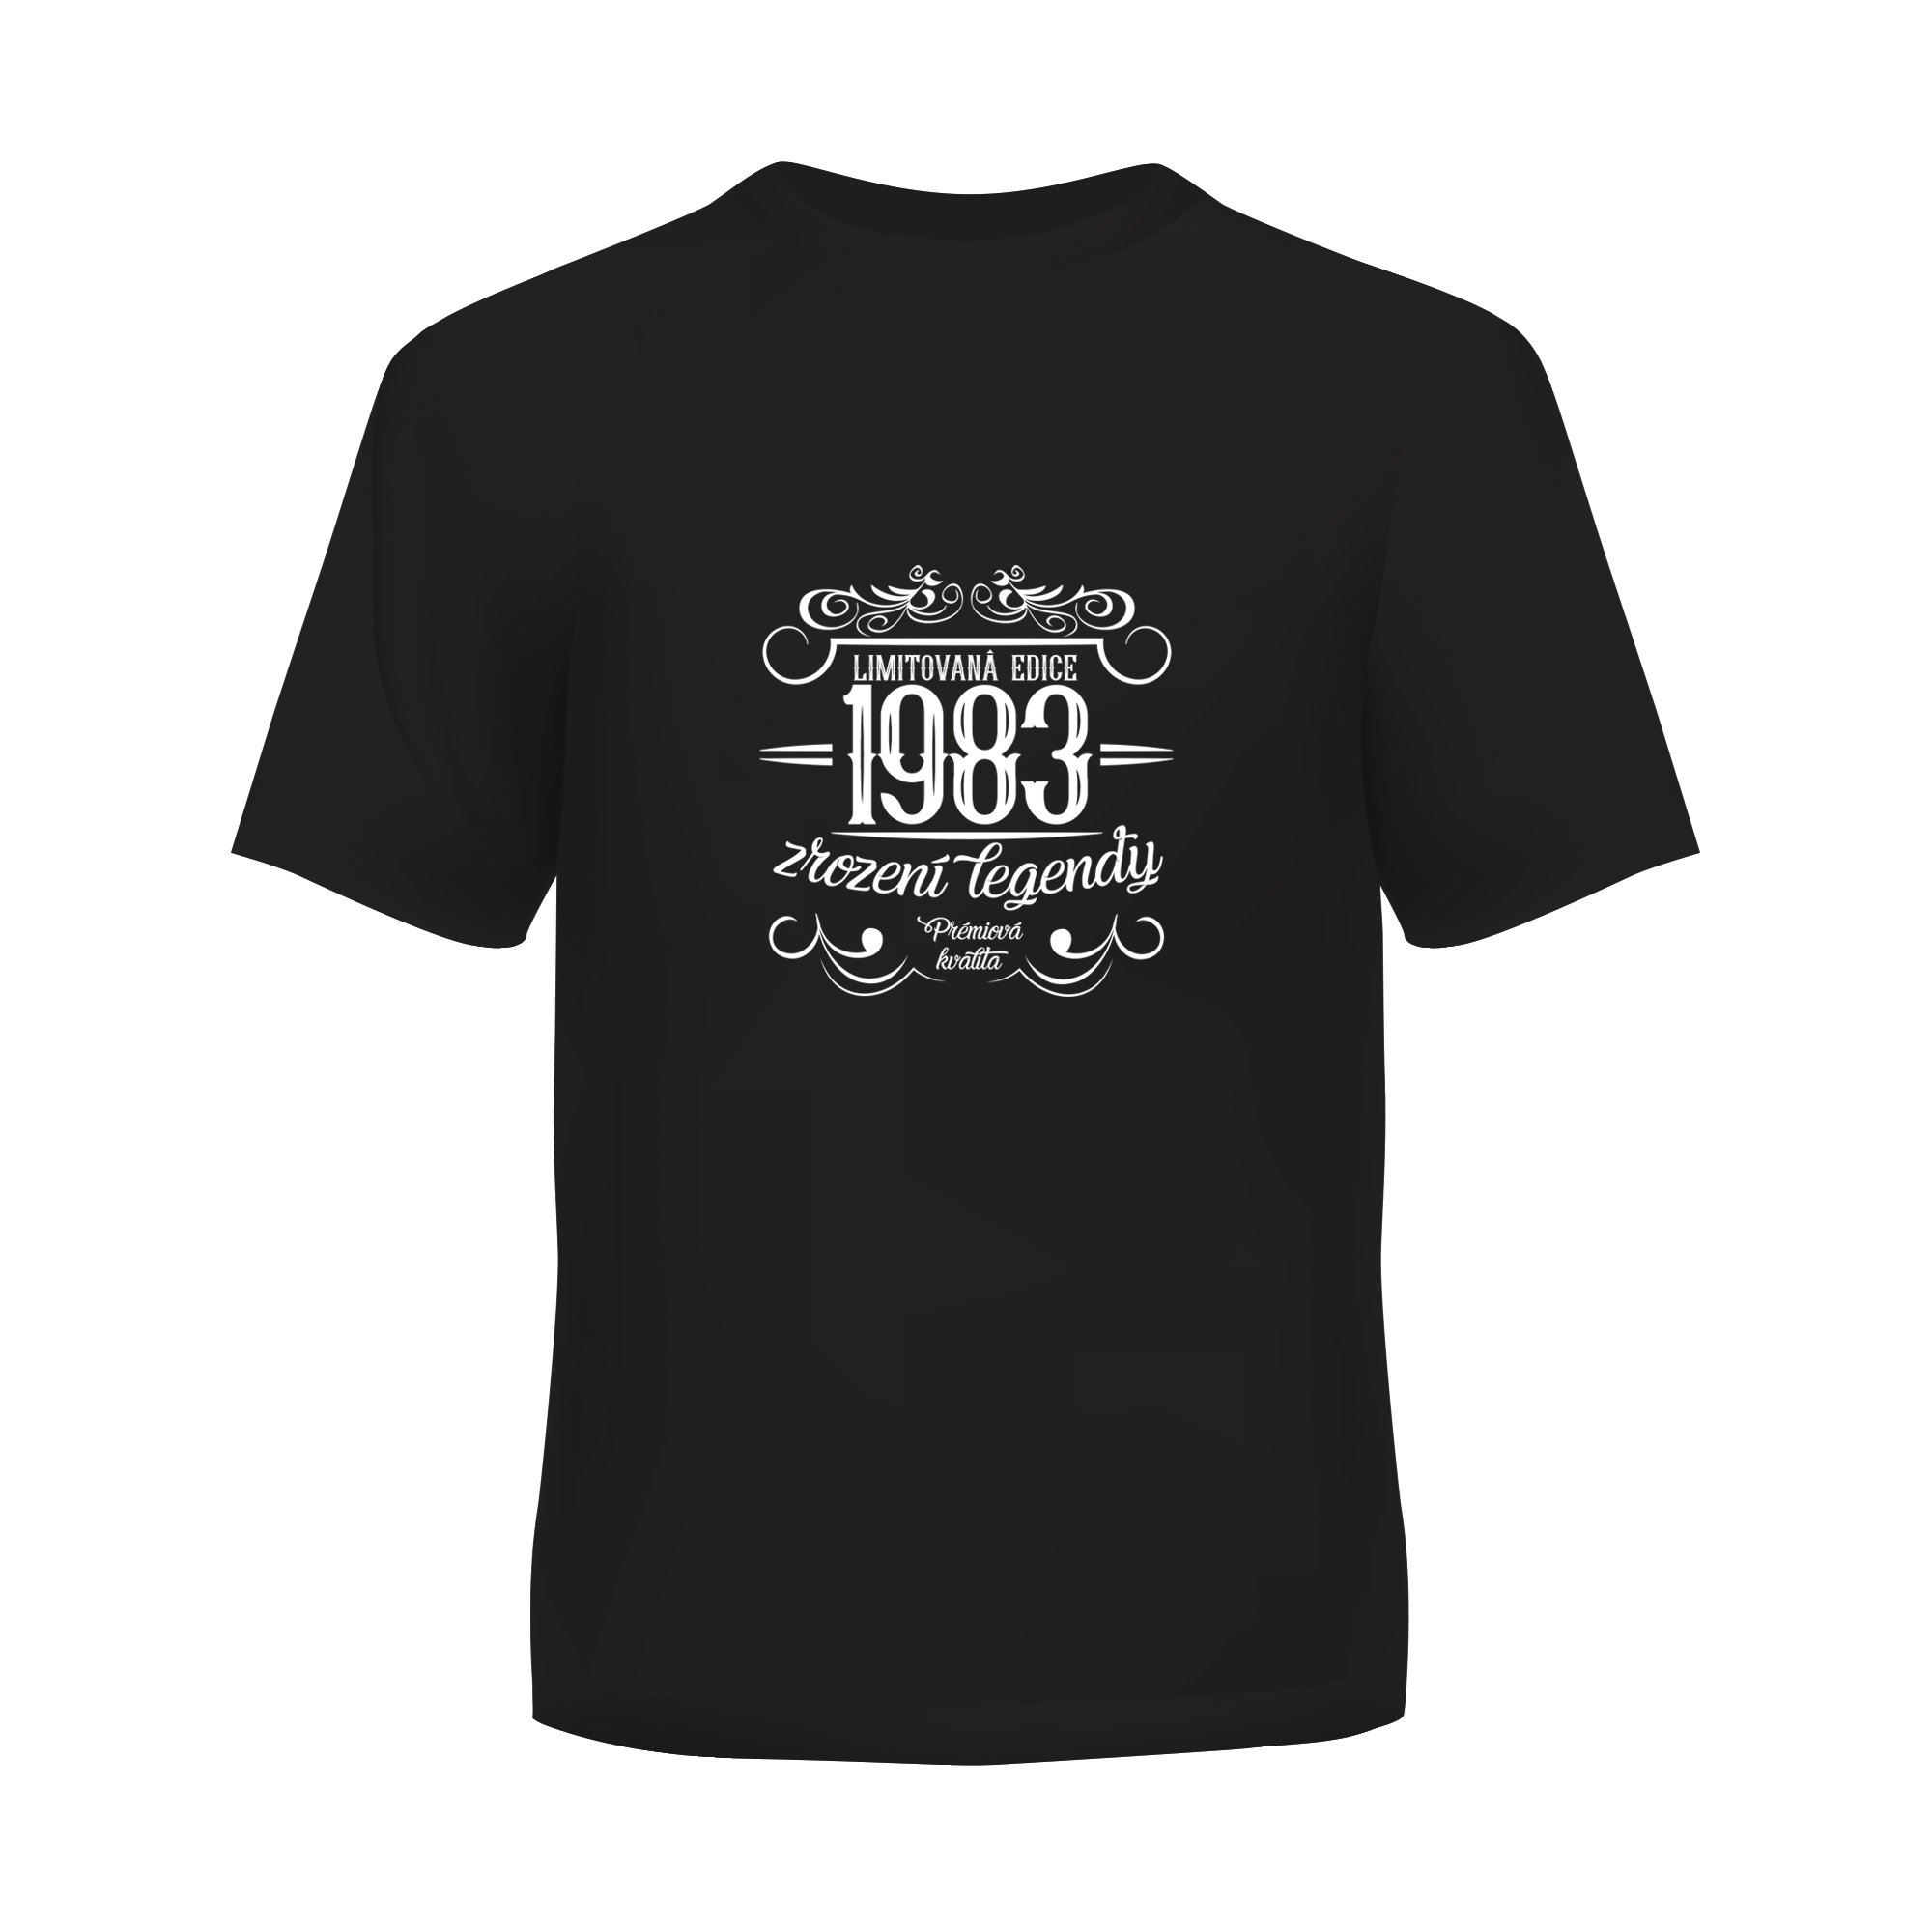 Levně Albi Pánské tričko - Limitovaná edice 1983, vel. L - Albi